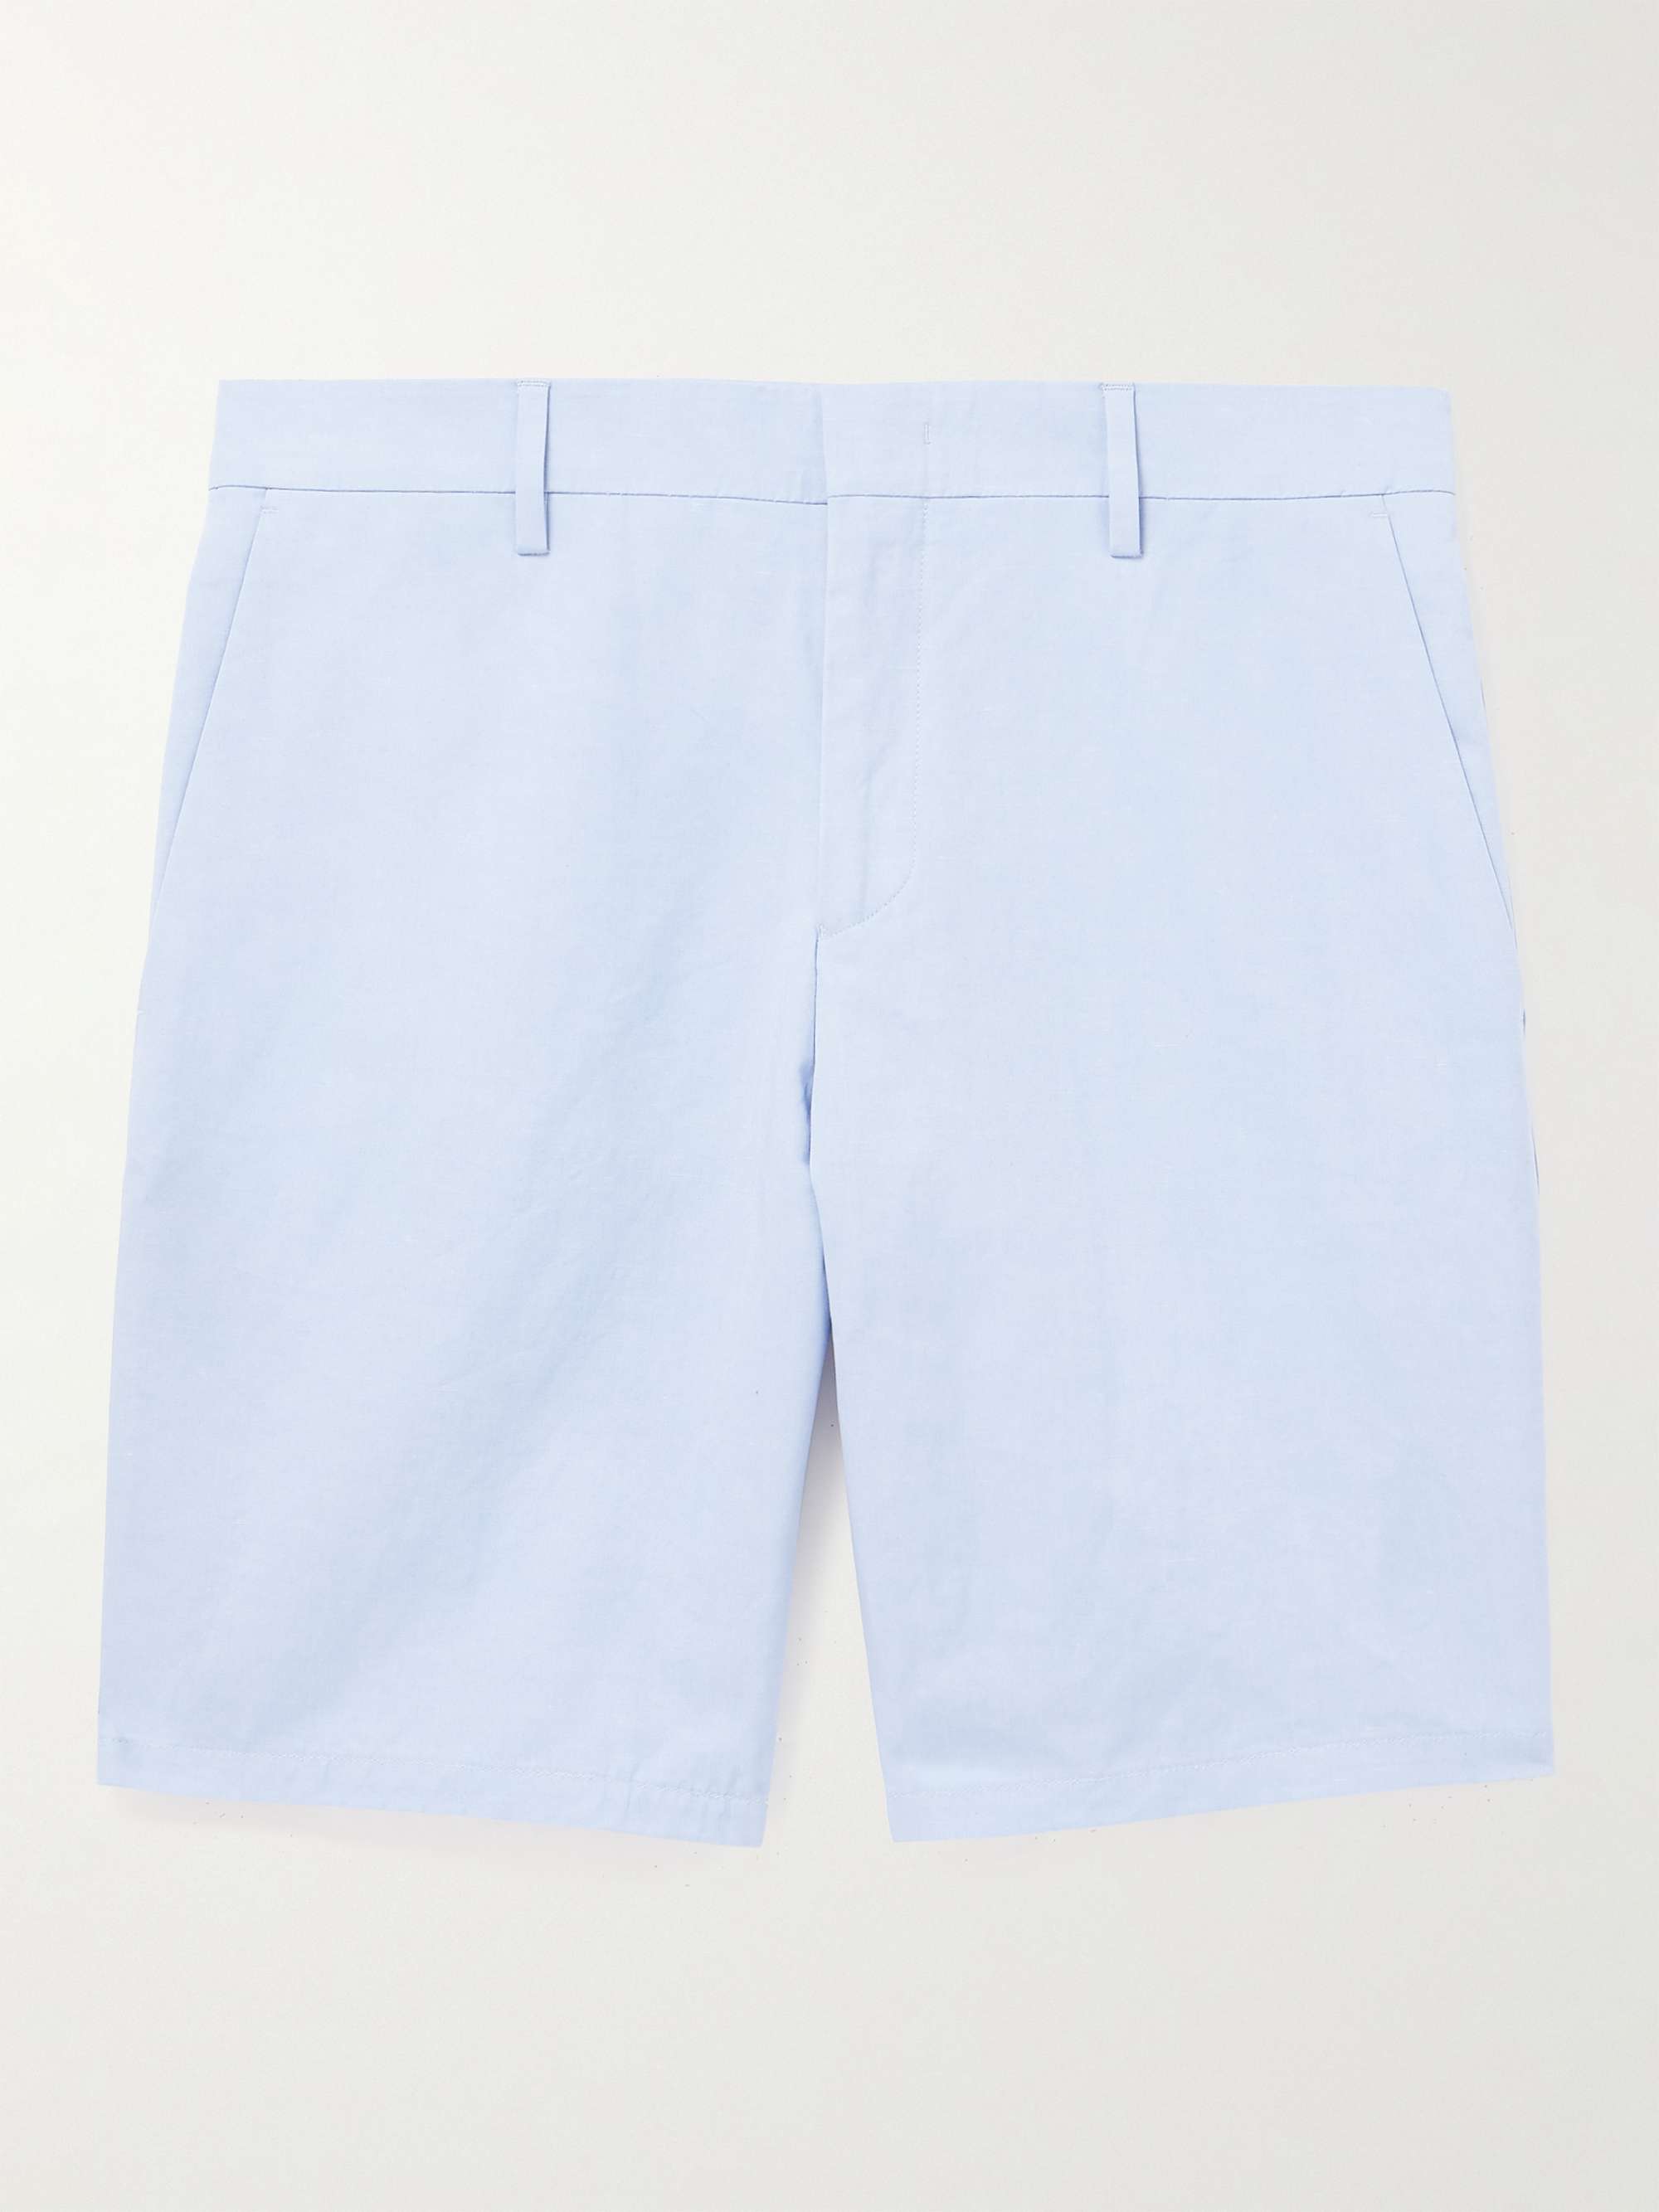 PAUL SMITH Straight-Leg Linen Shorts for Men | MR PORTER